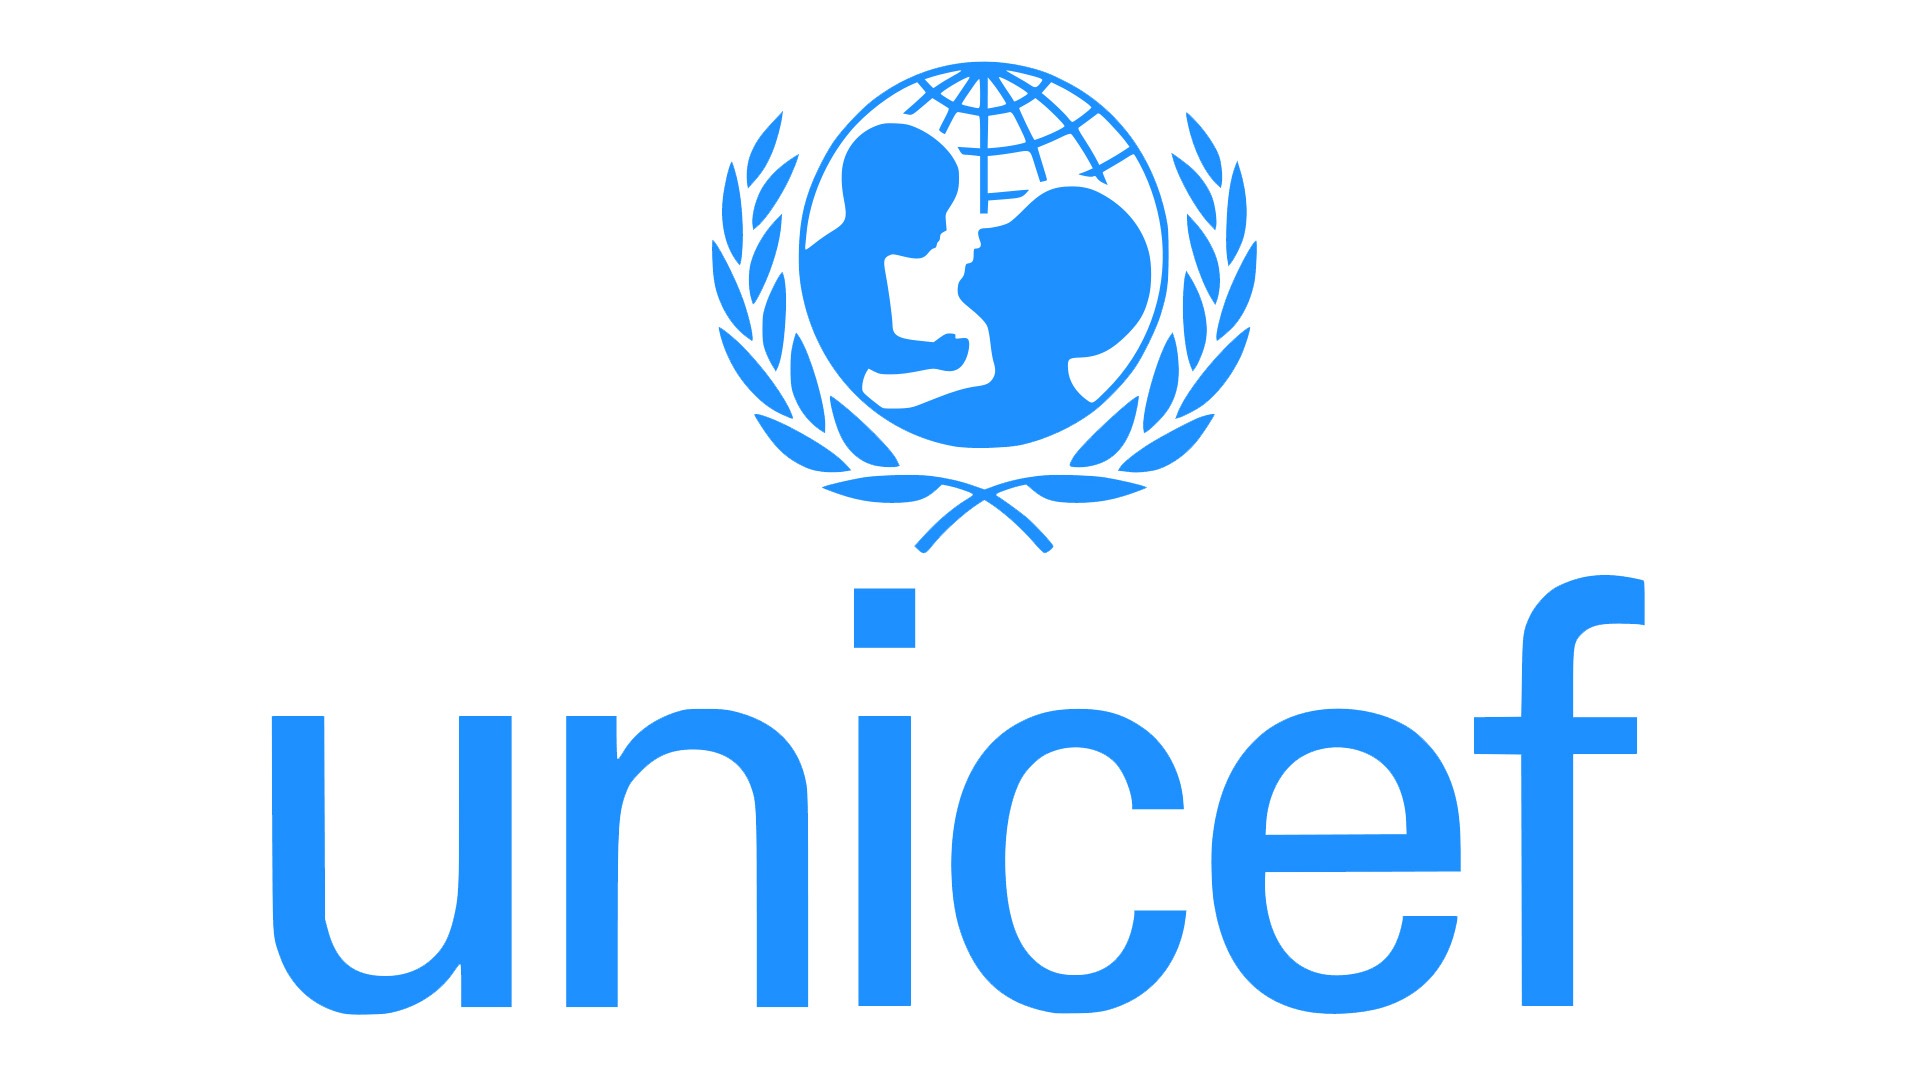 UNICEF logo : histoire, signification et évolution, symbole